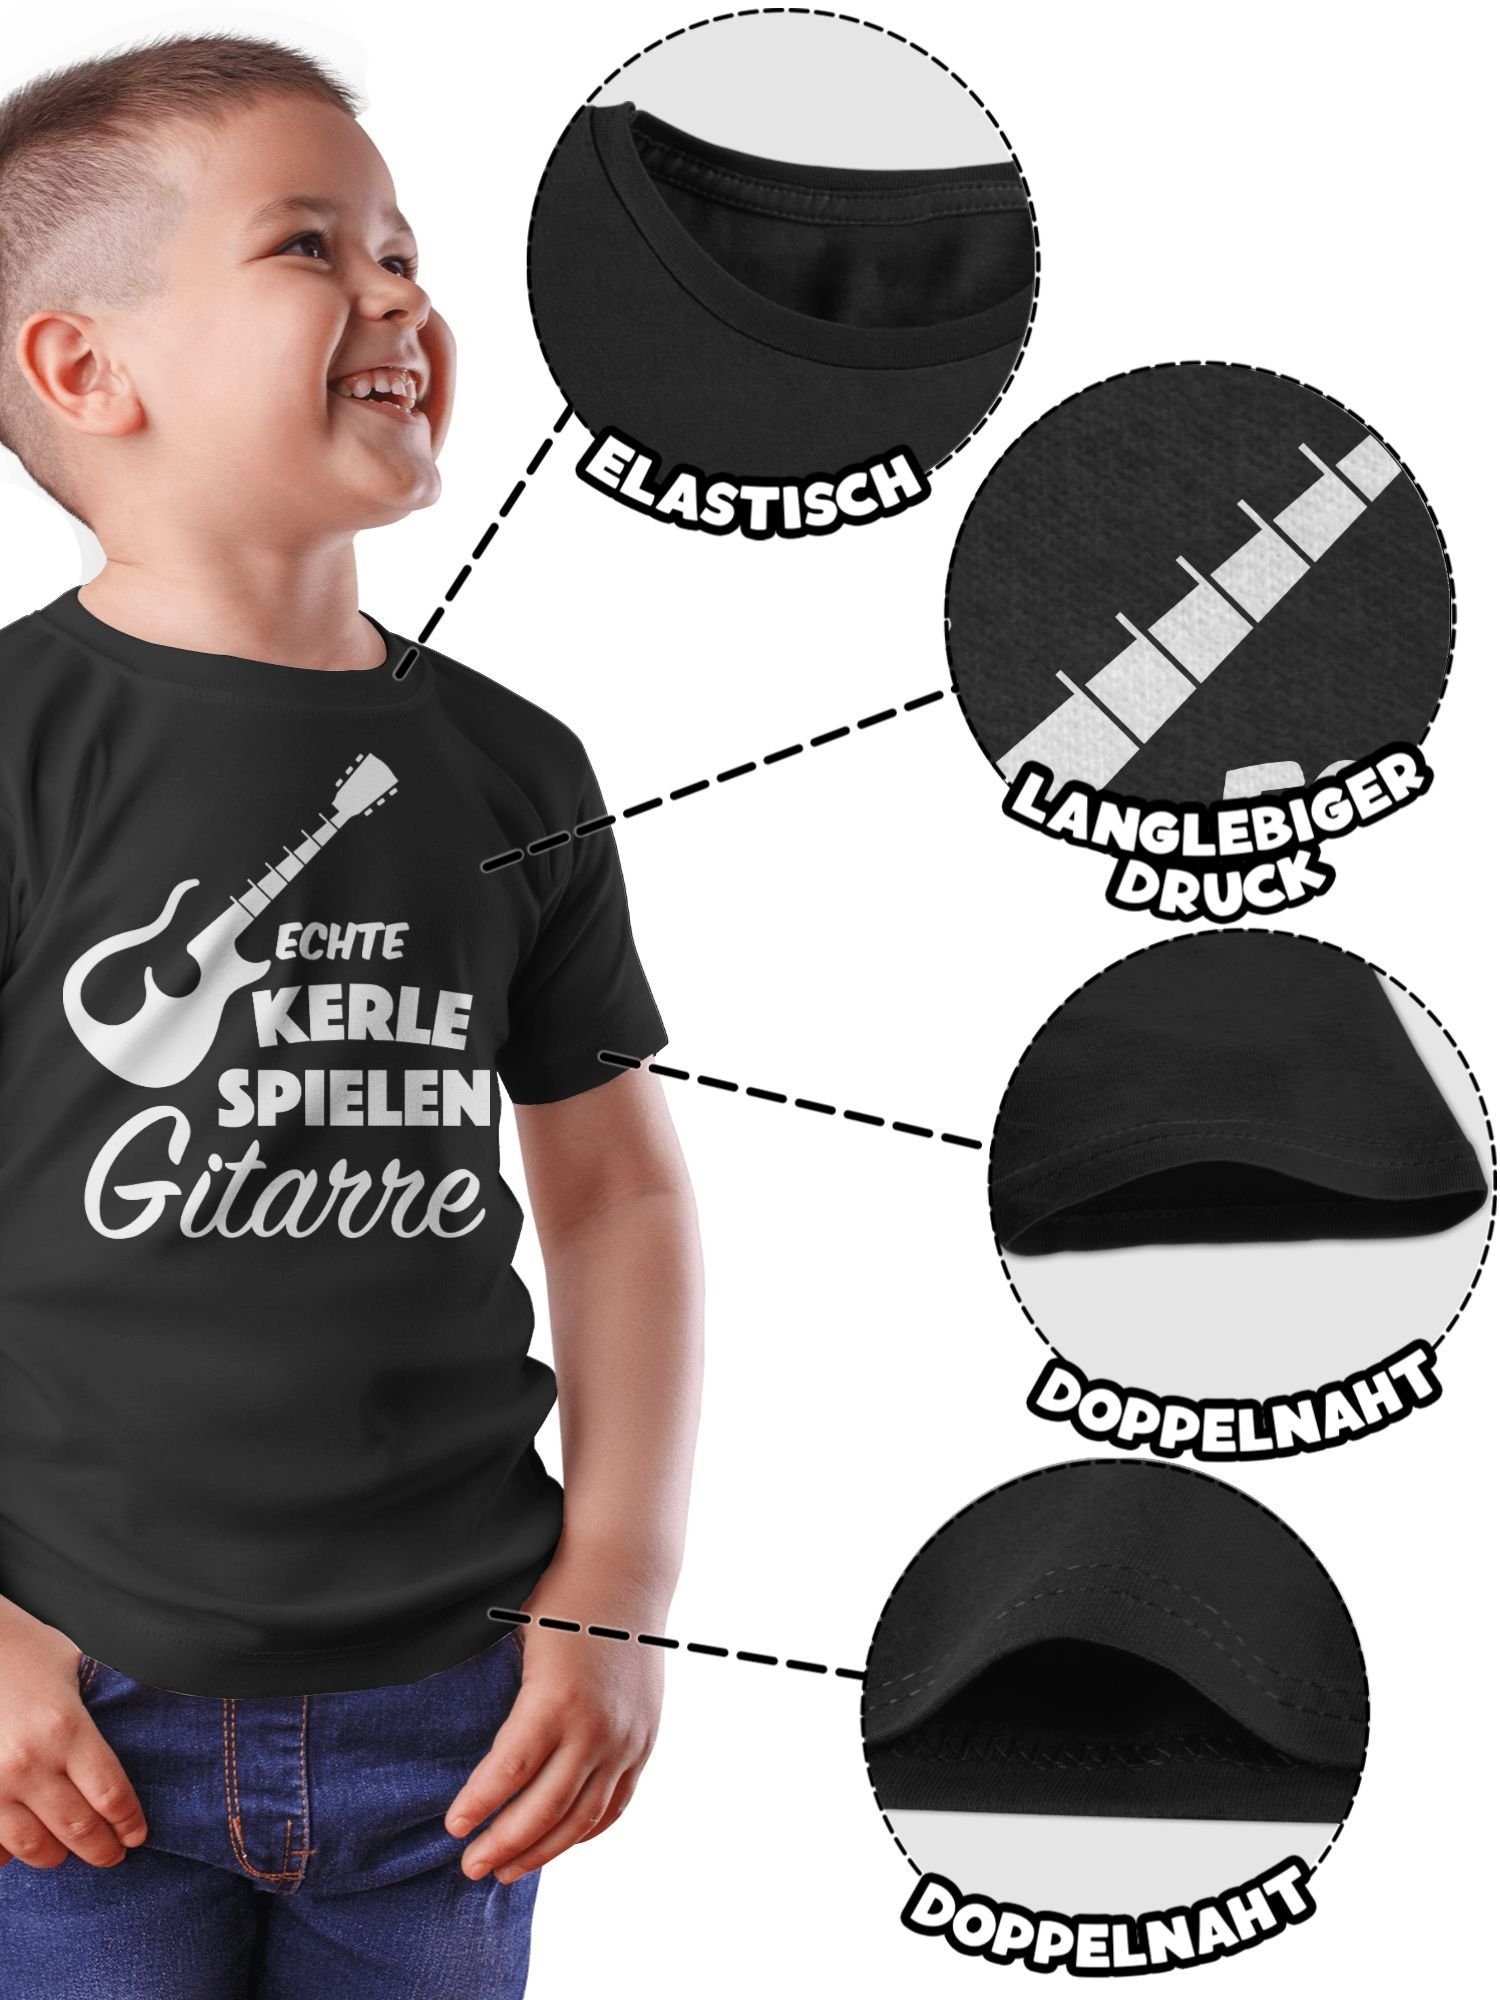 Shirtracer T-Shirt Echte Sprüche Kerle Statement spielen Kinder 2 Schwarz Gitarre